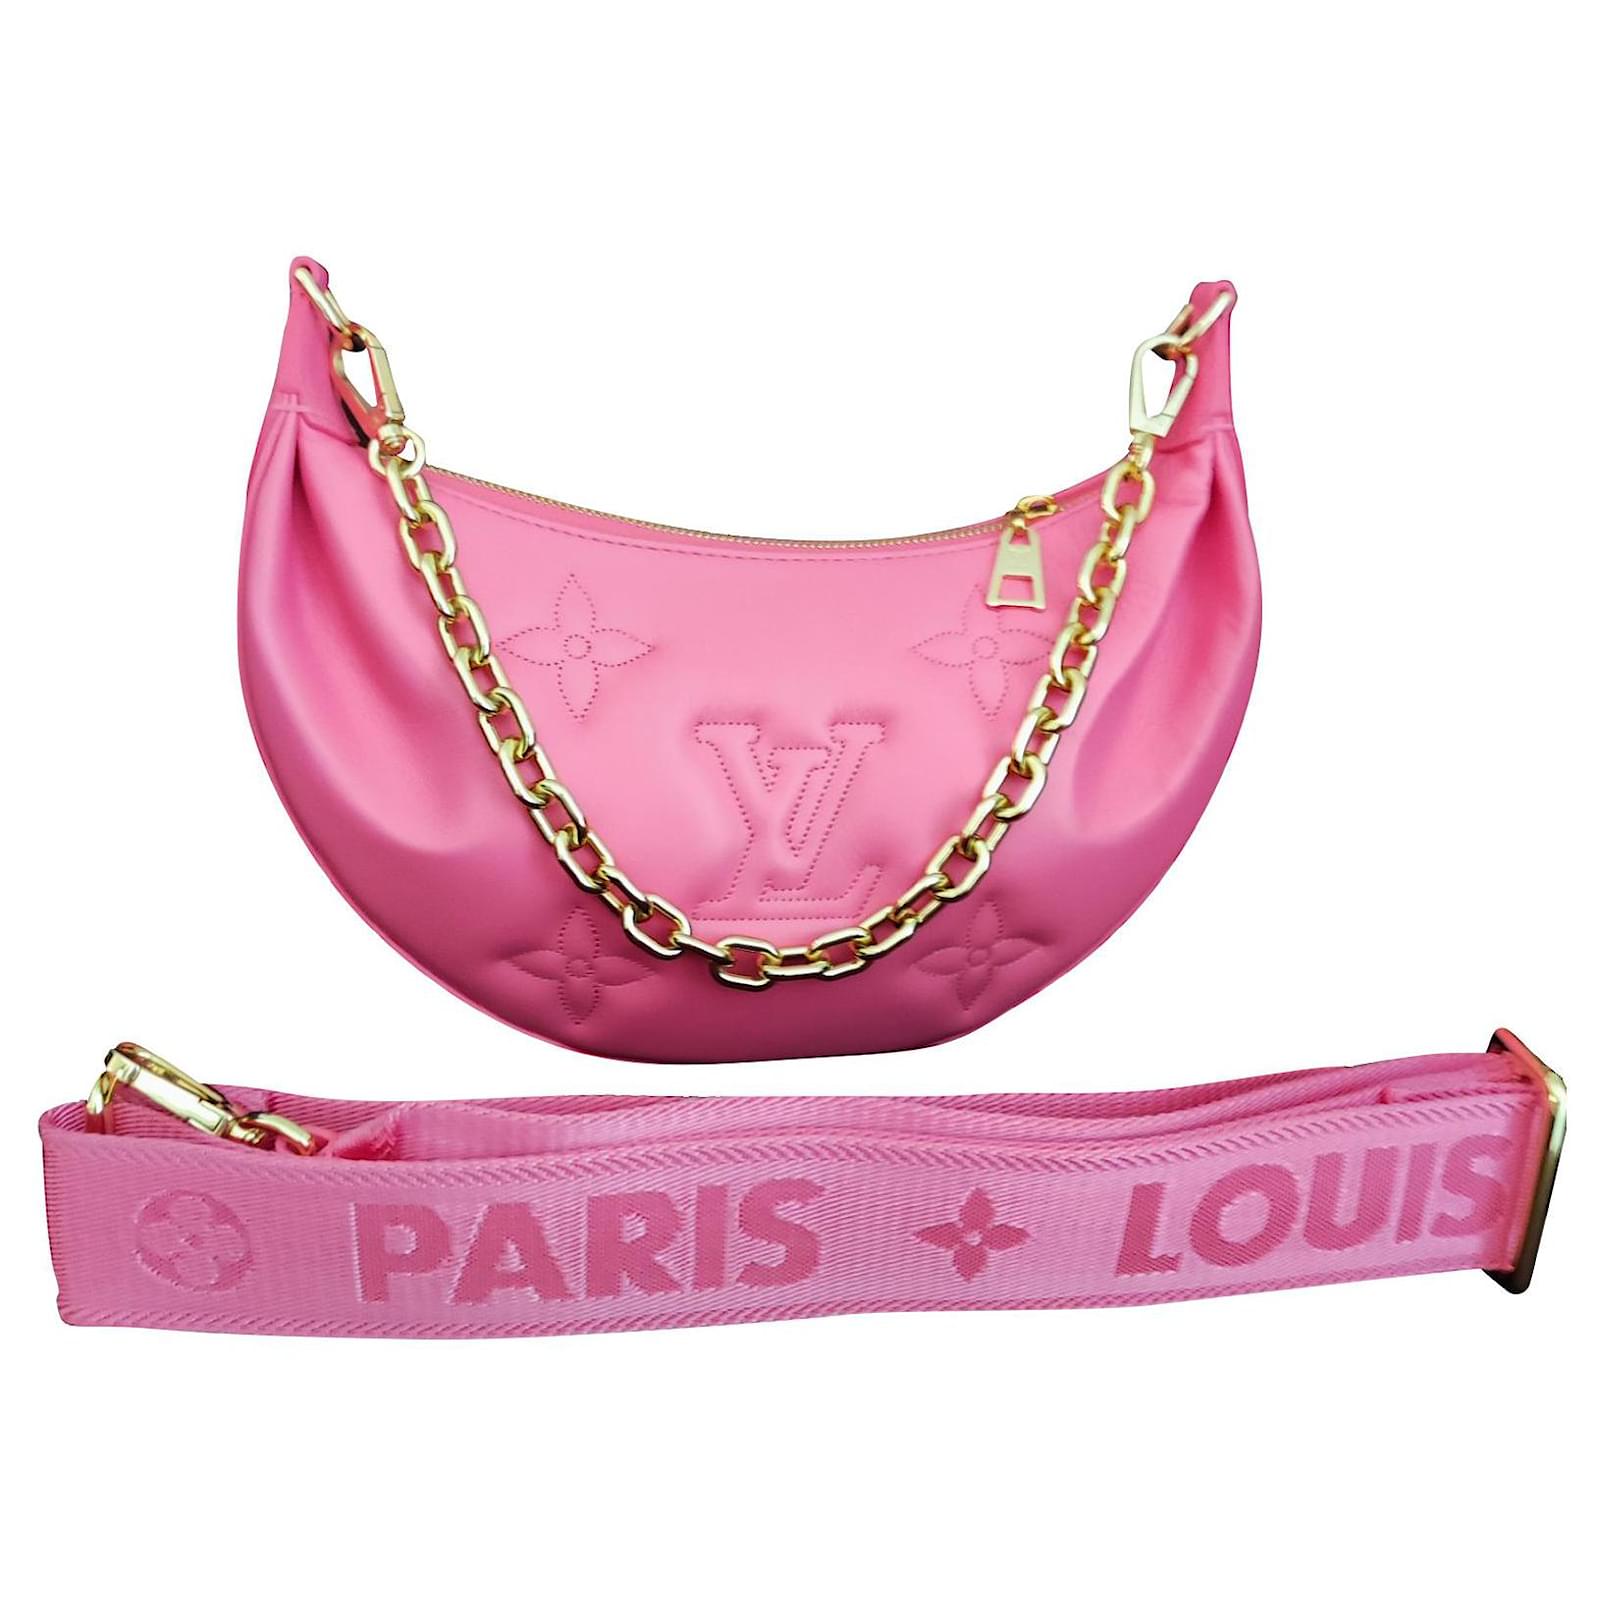 Bolsito de mano Louis Vuitton en cuero Monogram rosa pálido